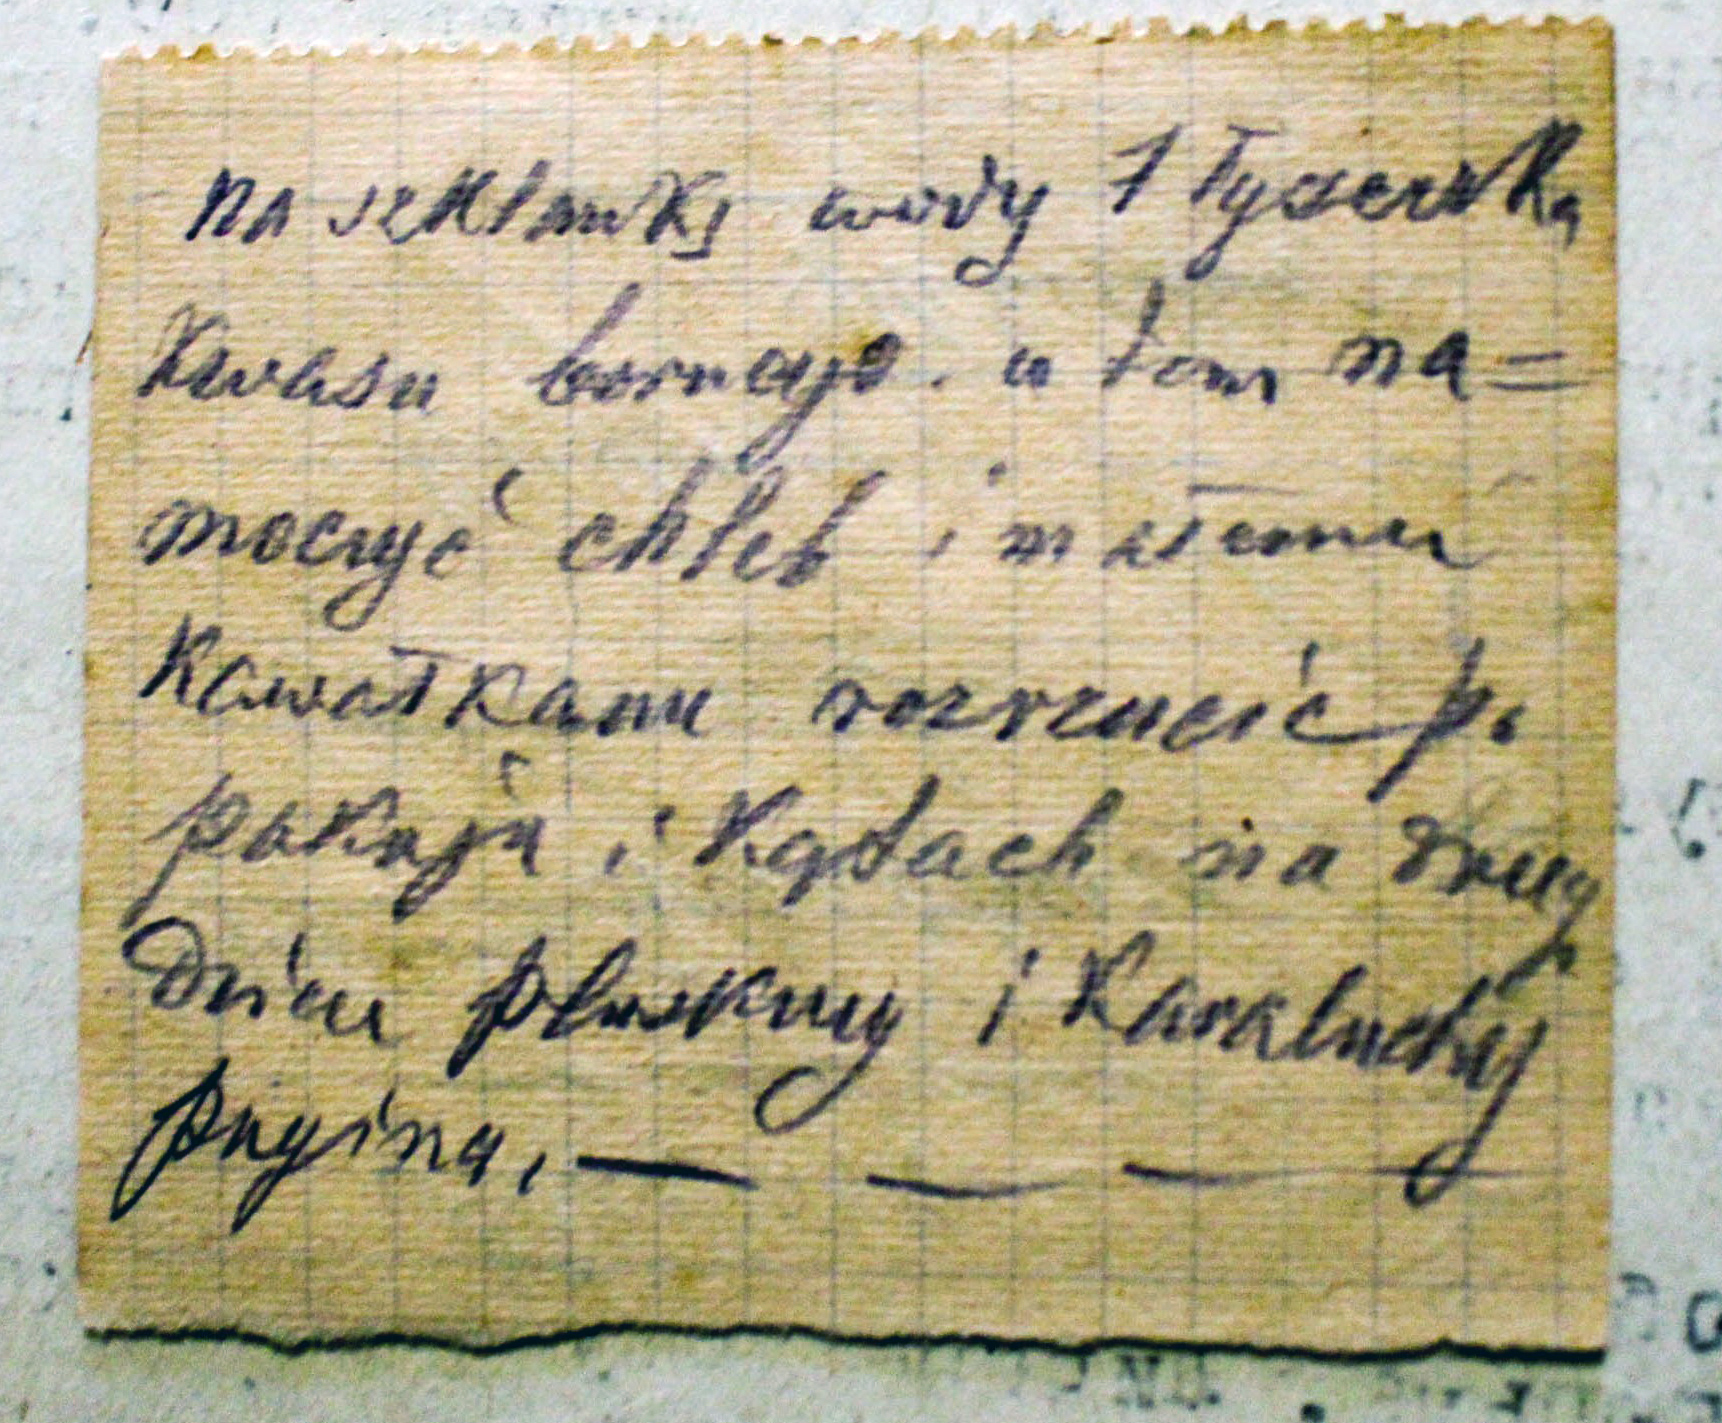 Instrukcja w języku polskim o pozbyciu się karaluchów w domu, którą bolszewicy uznali za dowód w sprawie Prolińskiego